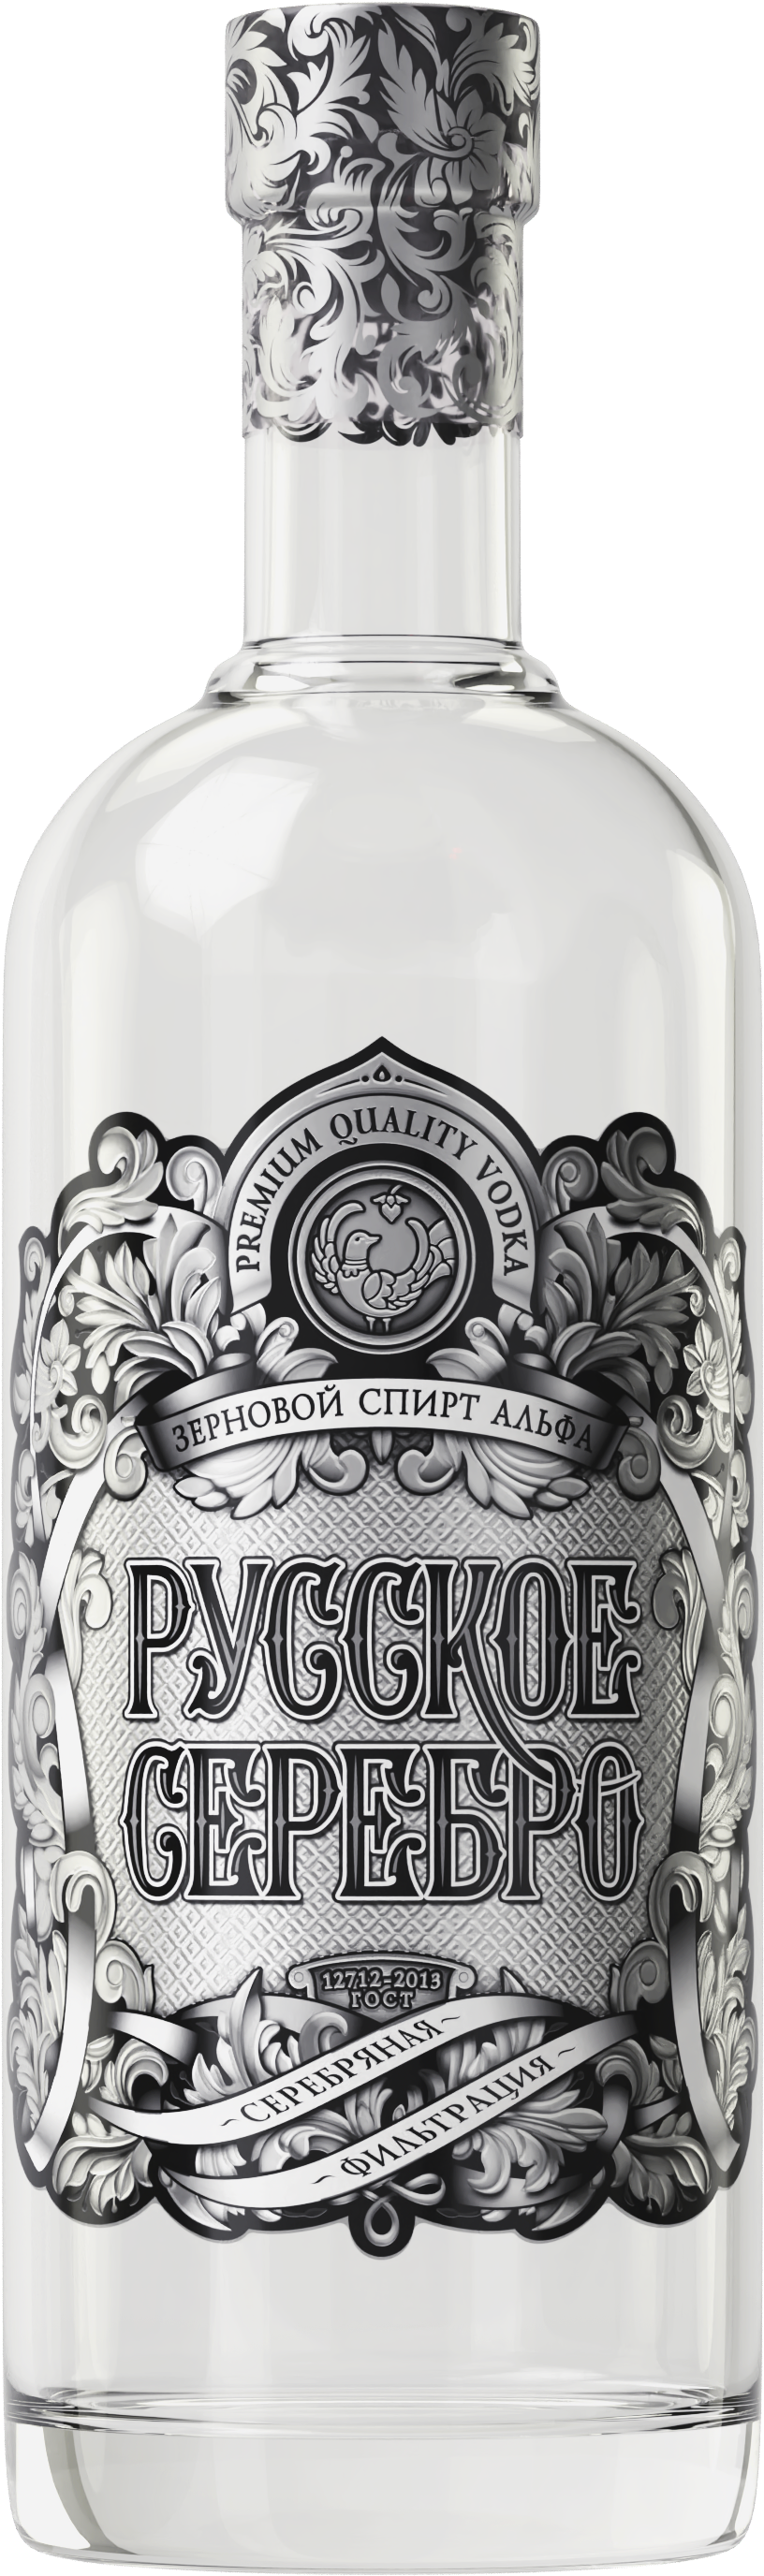 Russian Silver Vodka Bottle